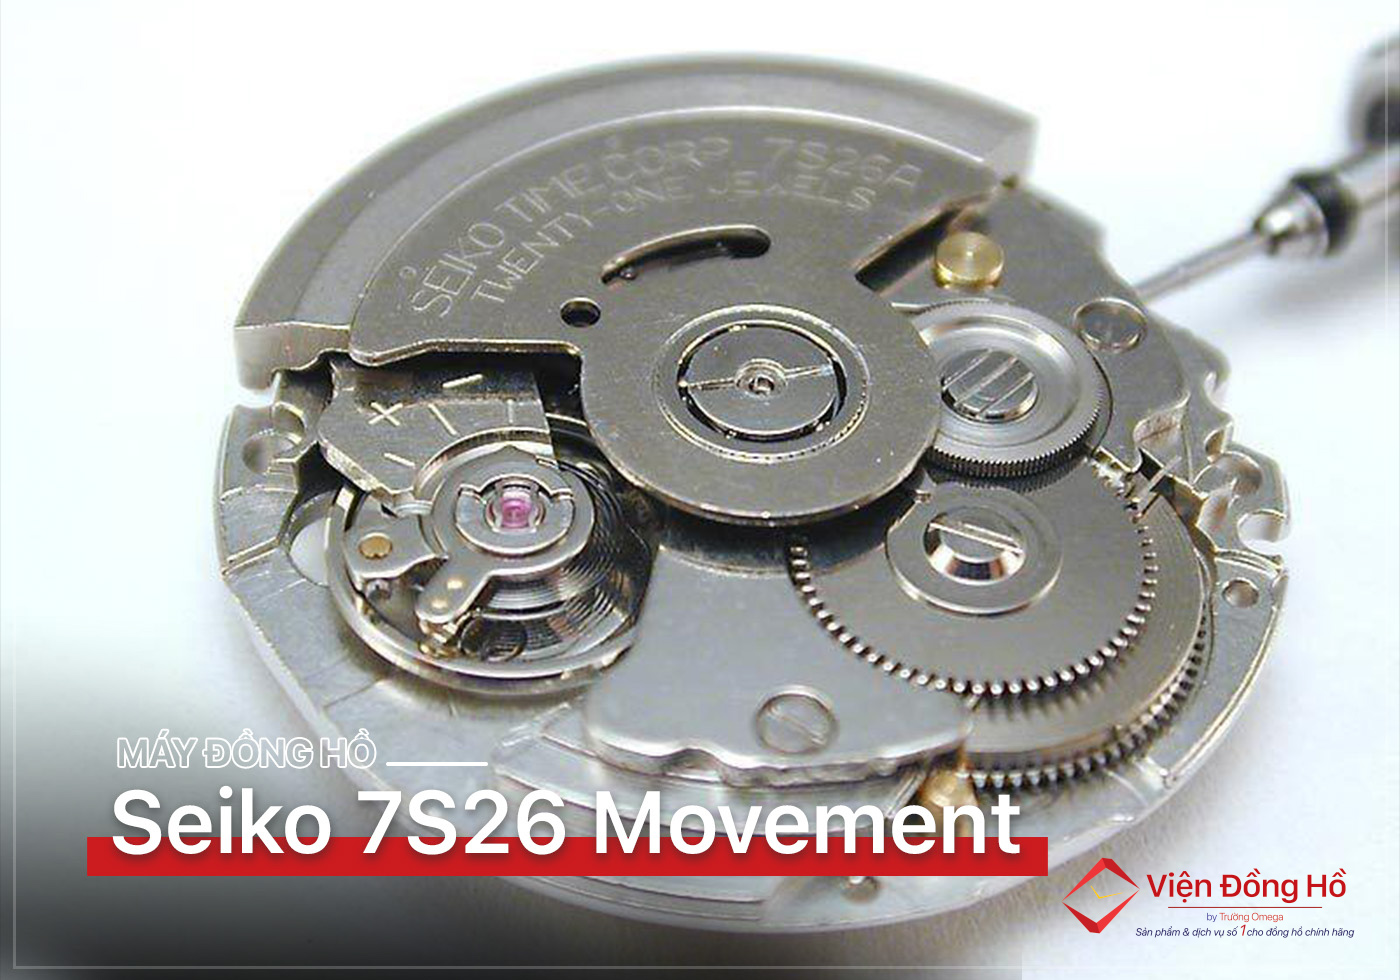 Seiko 7S26 Movement - Co may huyen thoai cua Seiko 6